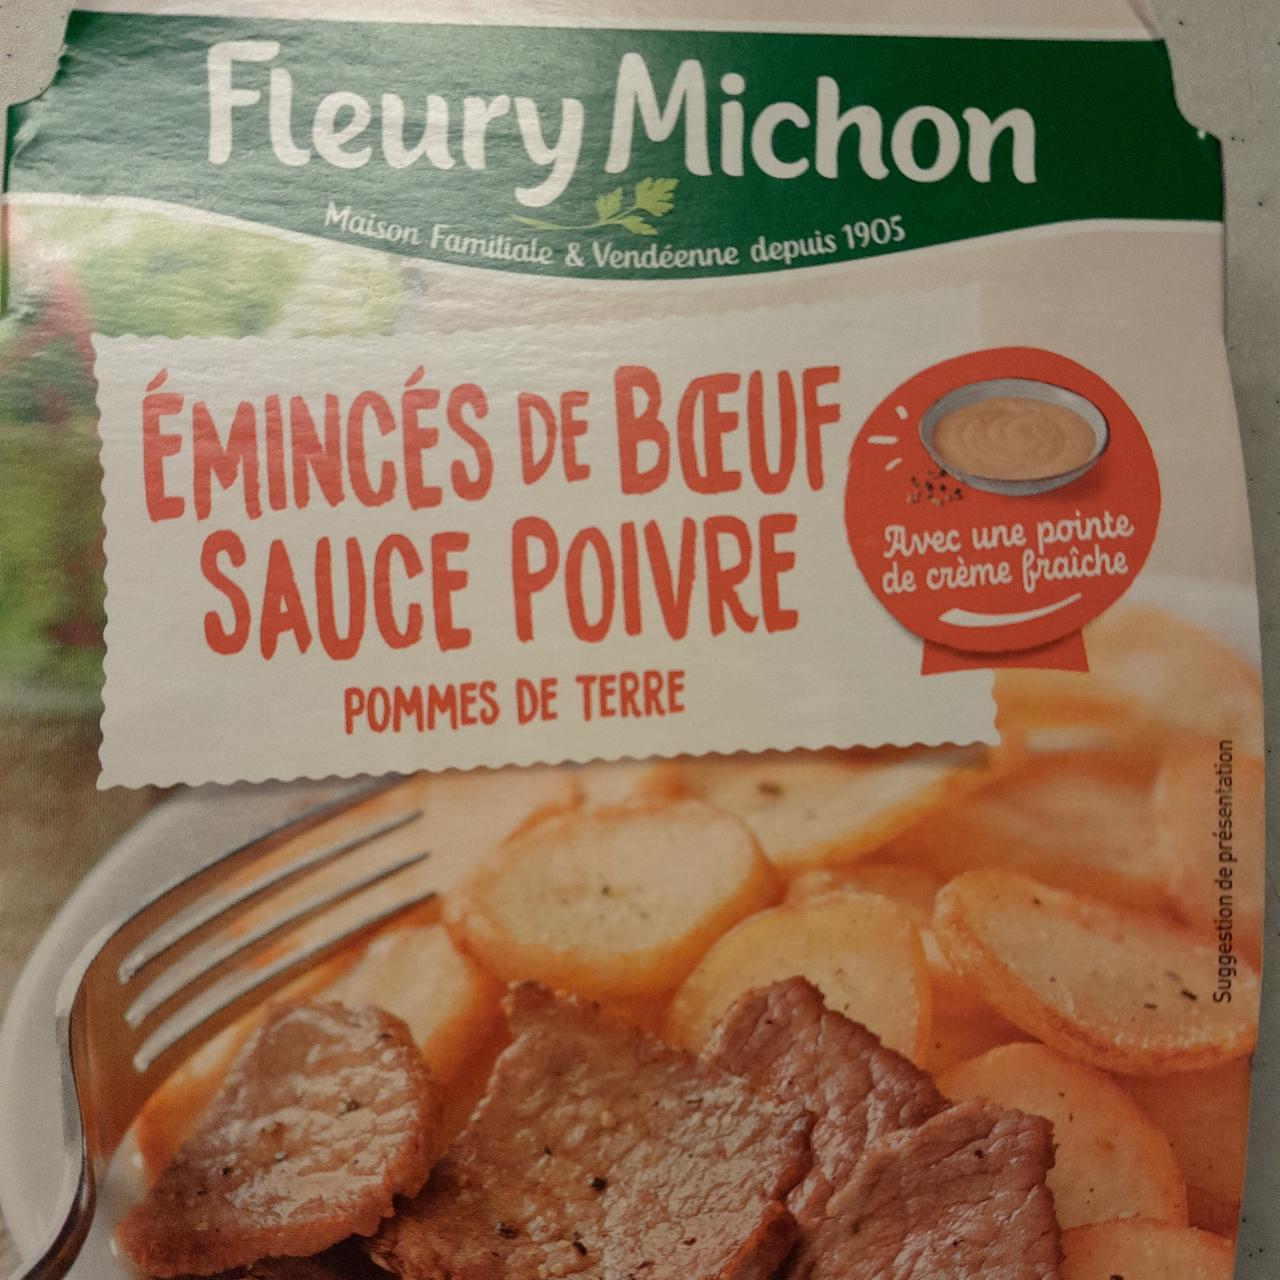 Fotografie - Émincés de Boeuf Sauce Poivre Pommes de Terre Fleury Michon